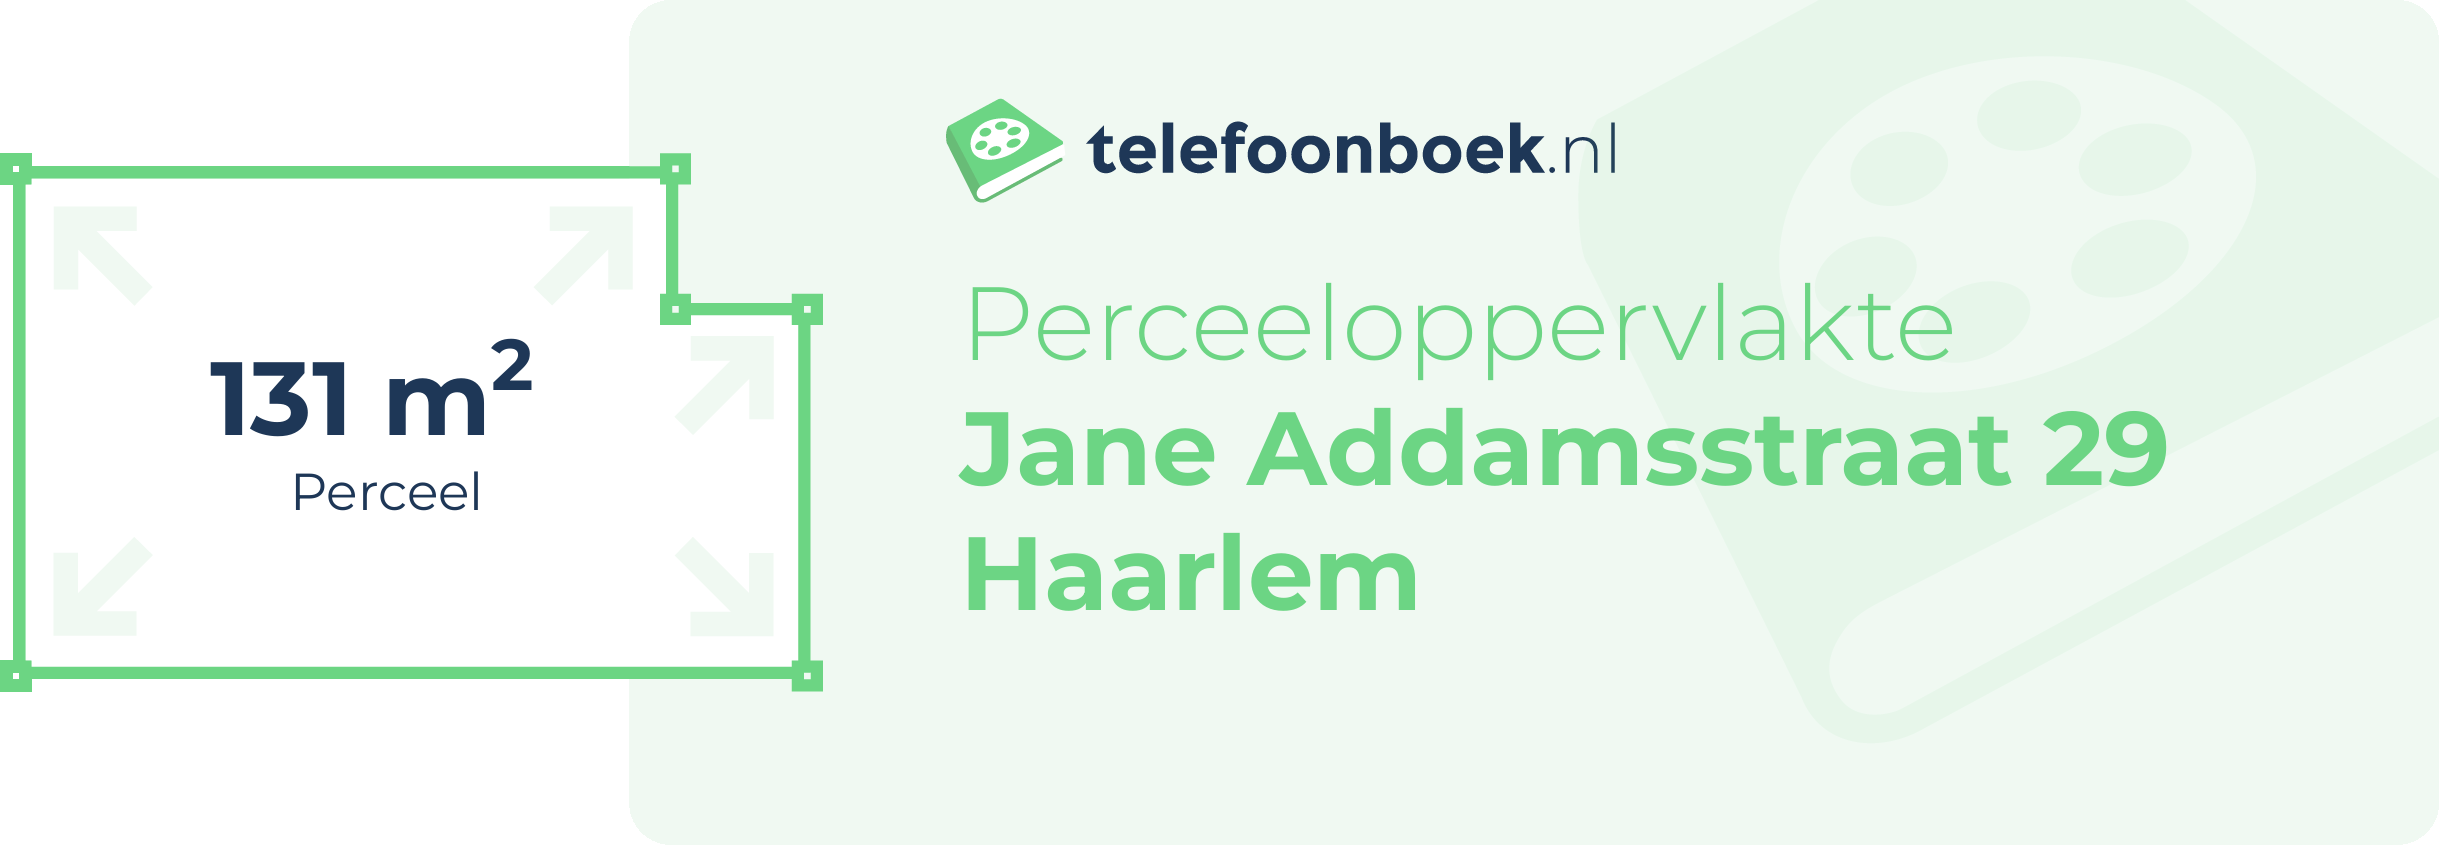 Perceeloppervlakte Jane Addamsstraat 29 Haarlem